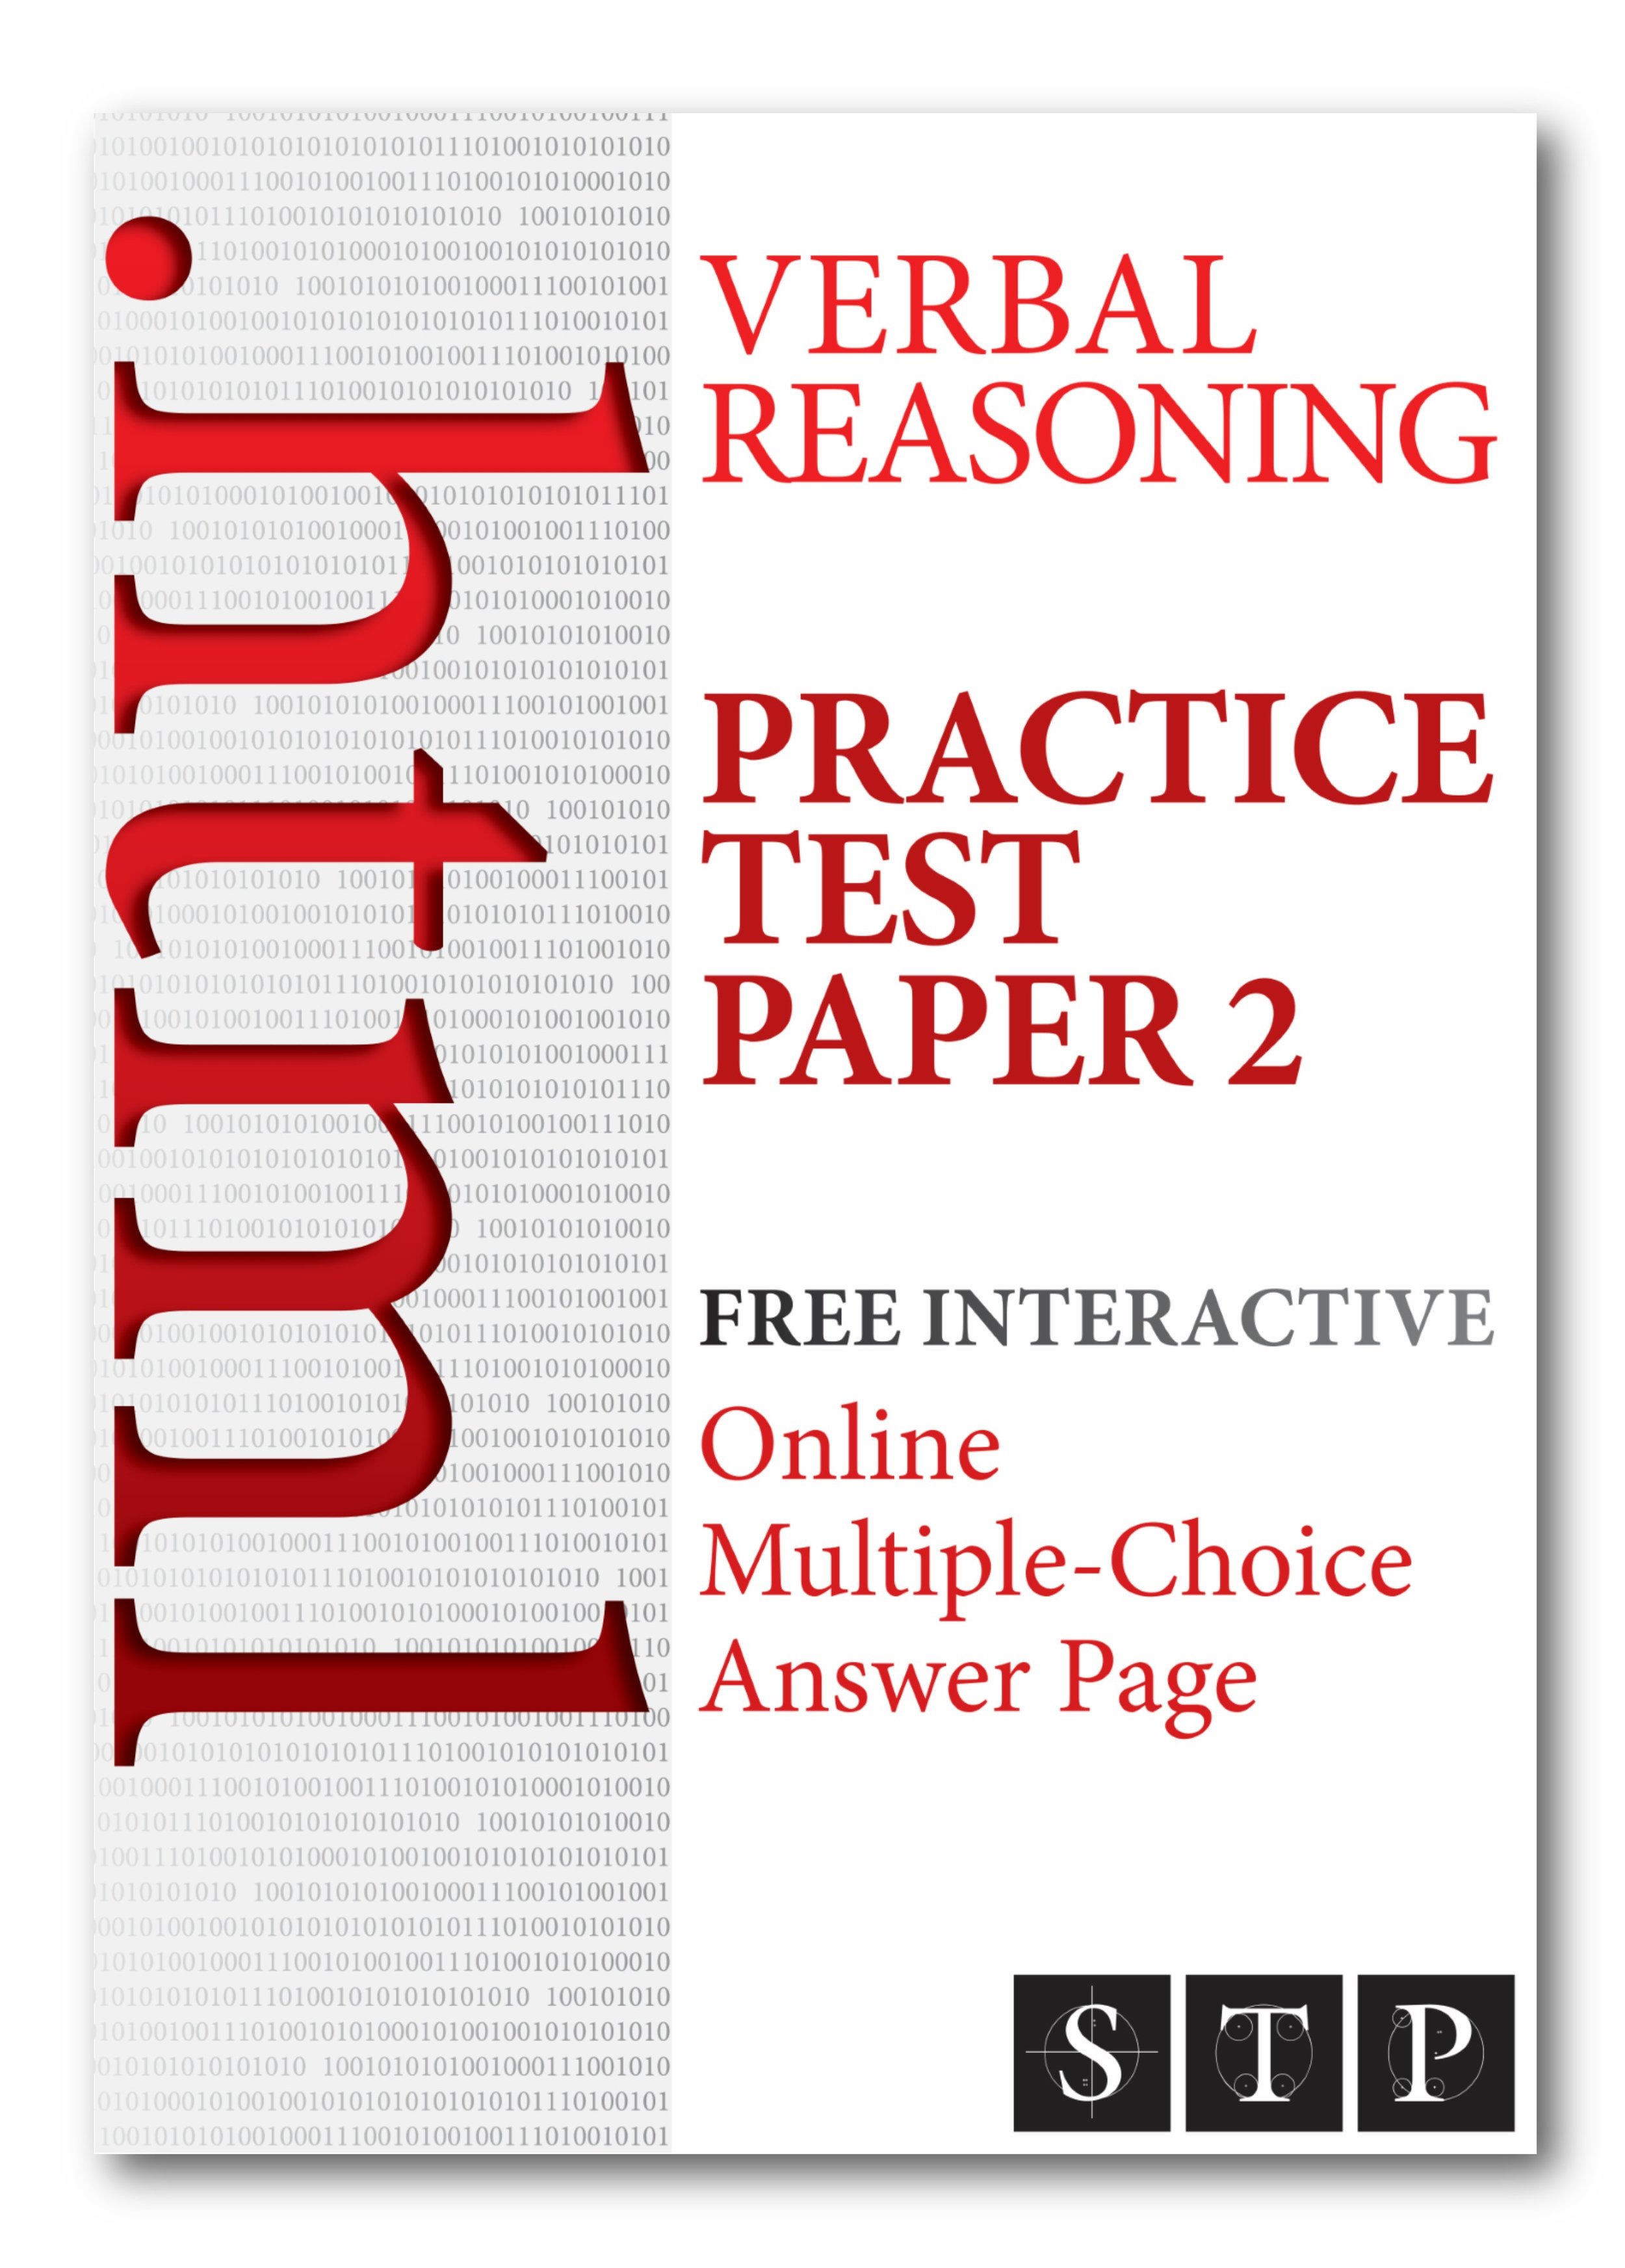 OAP 11+ Verbal Reasoning Practice Test 2 (InDesign).jpg